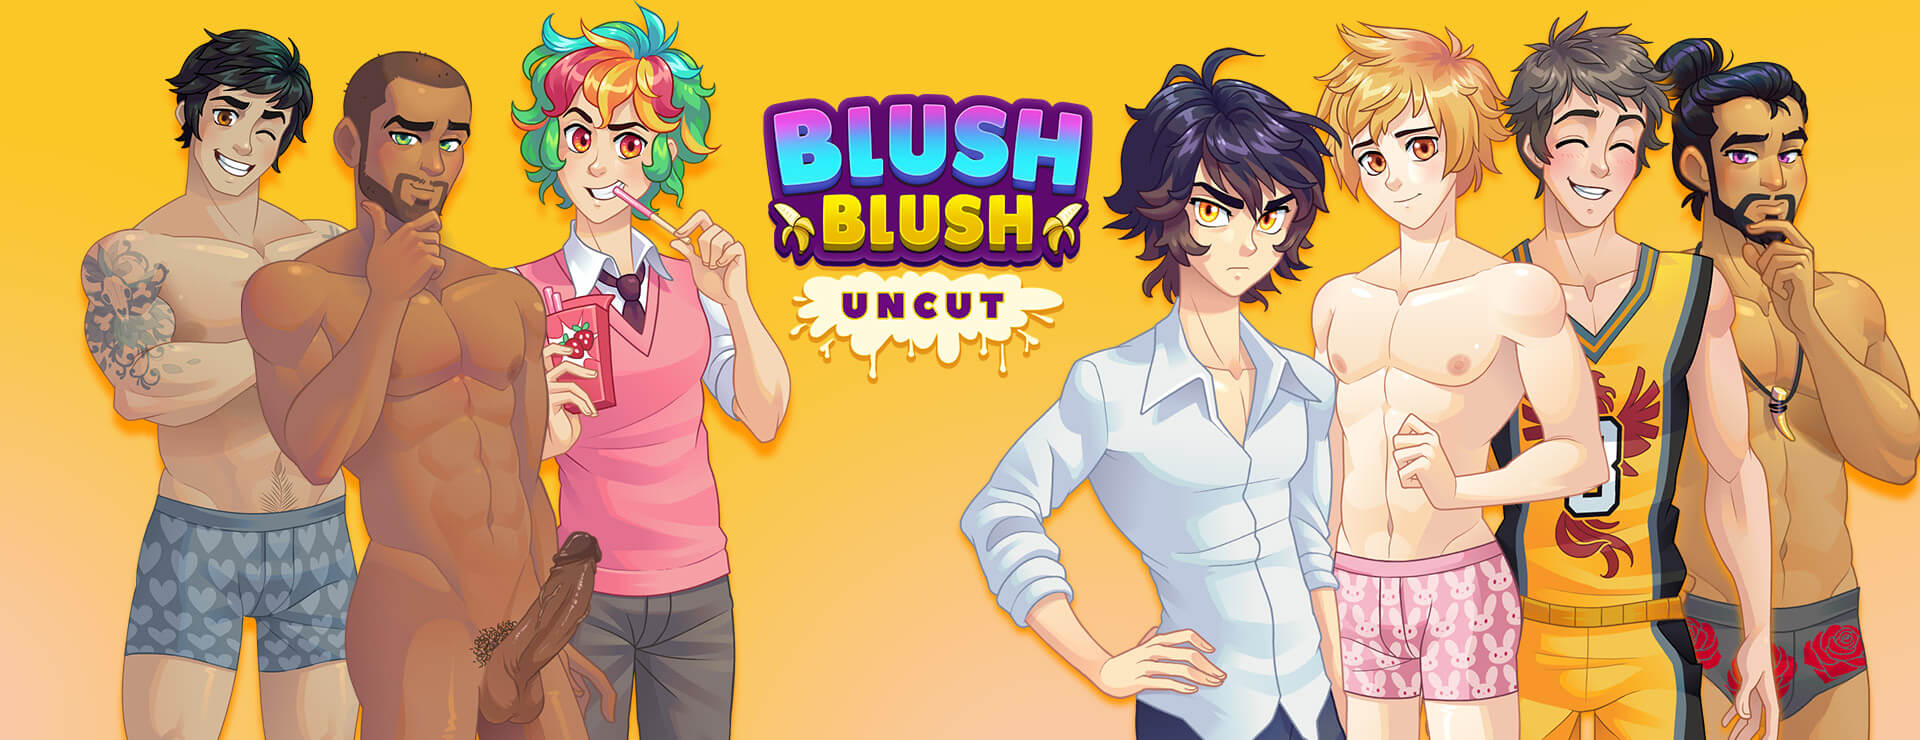 Blush Blush - Casual Game